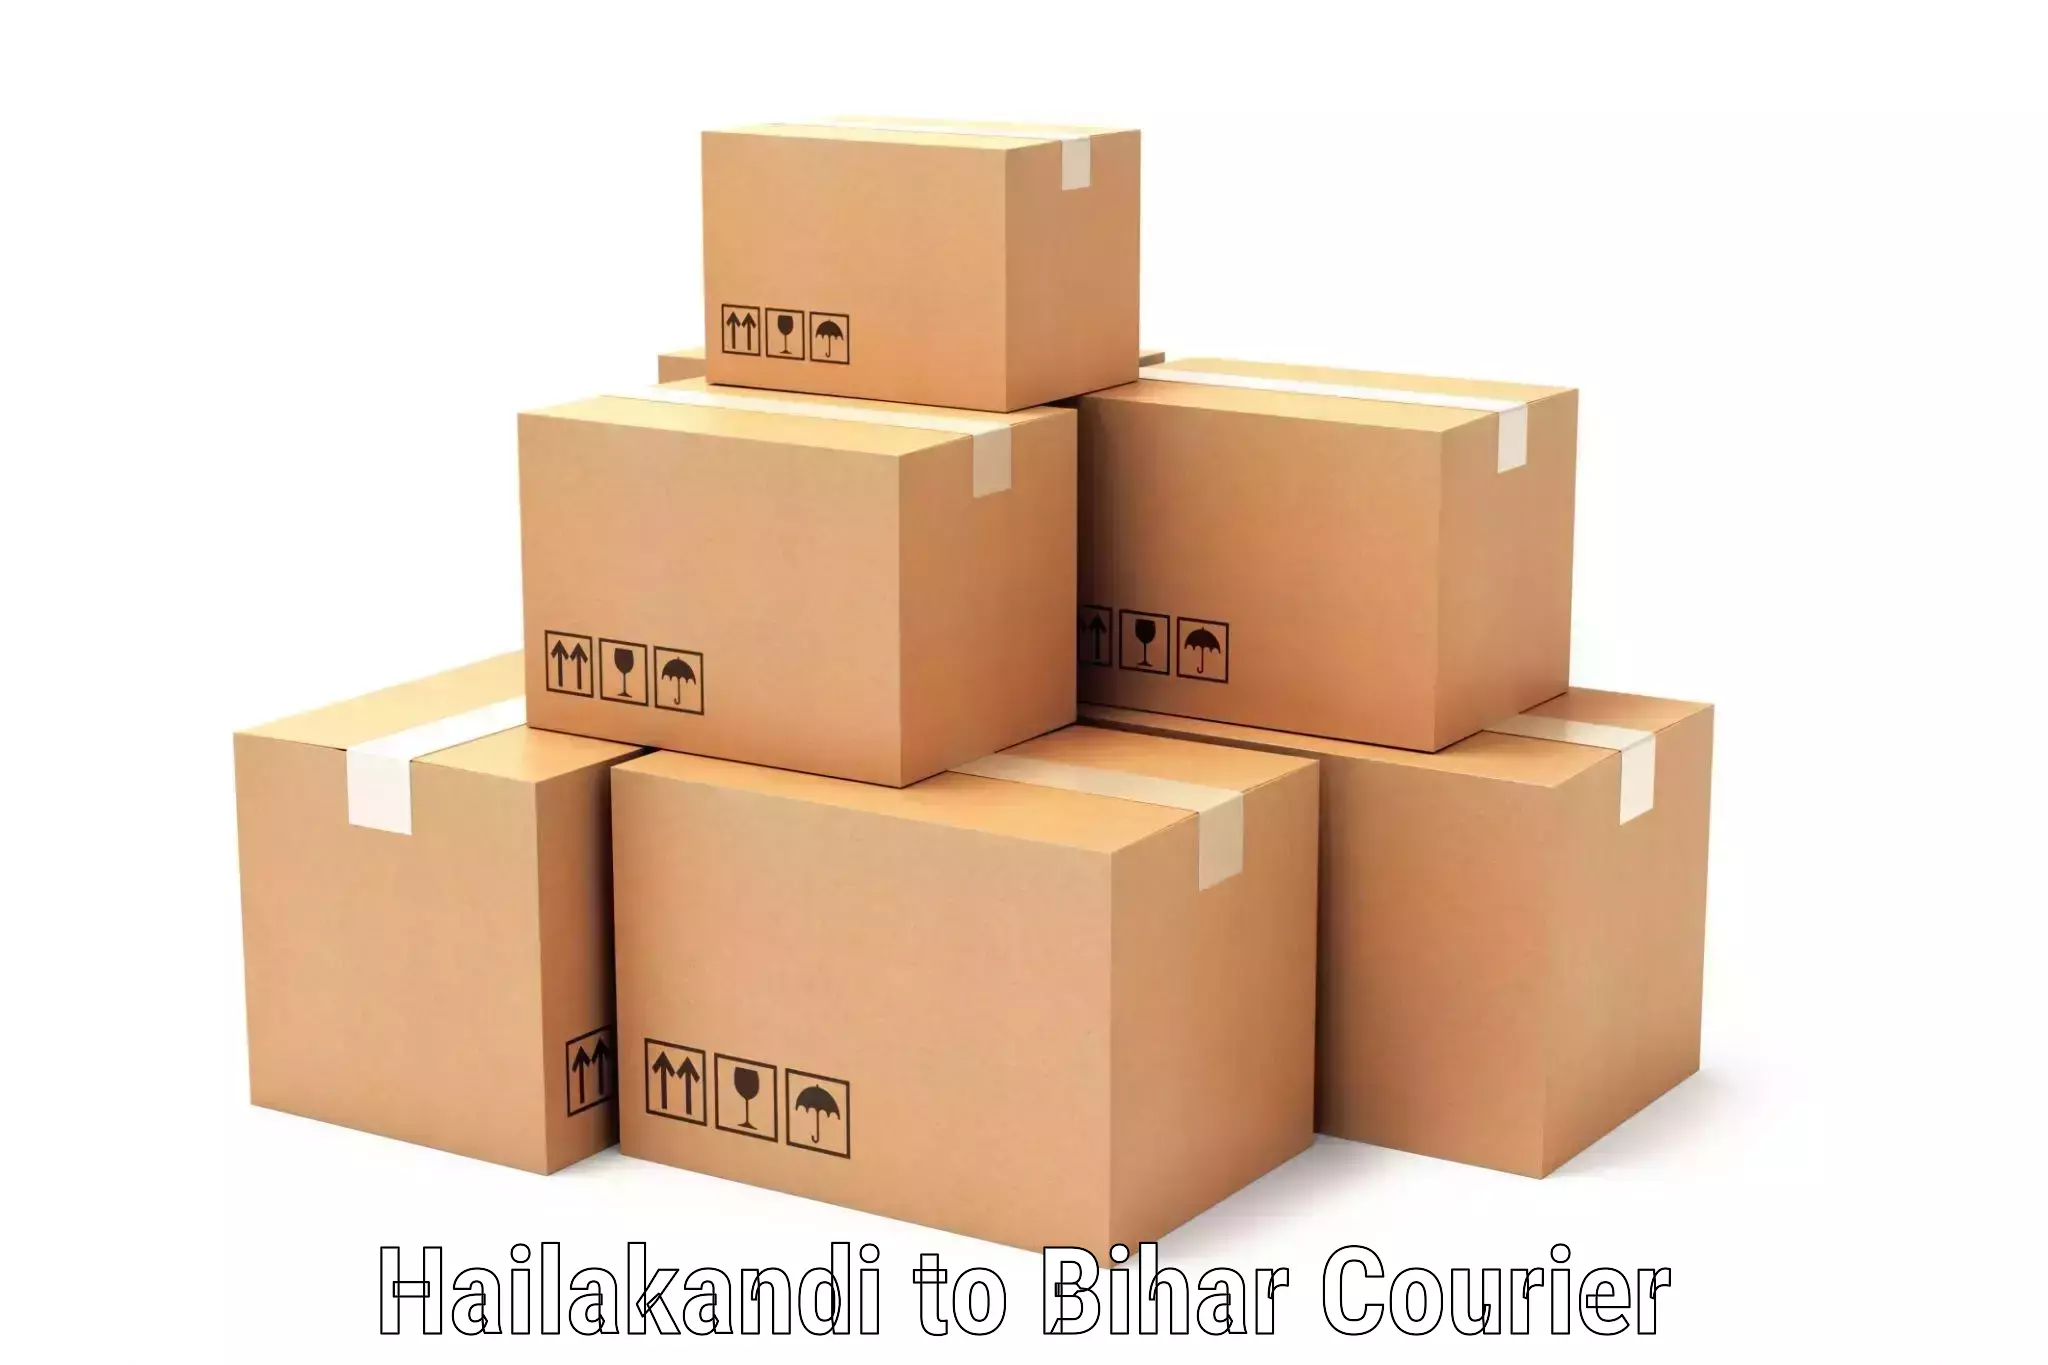 Global shipping networks Hailakandi to Madhubani